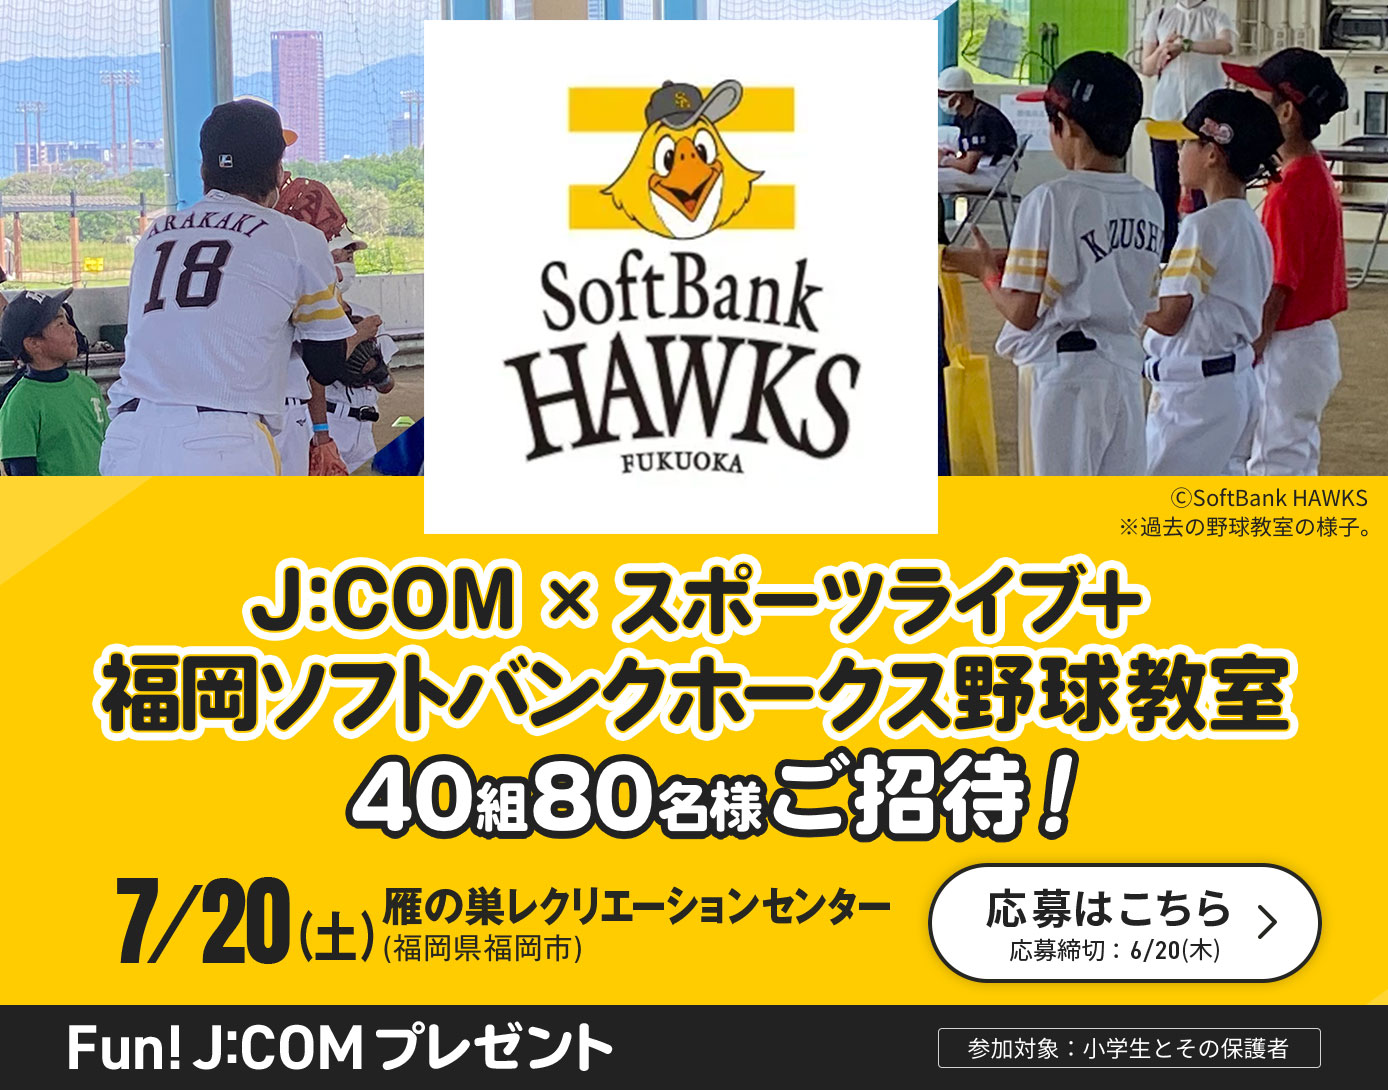 J:COM×スポーツライブ+ 福岡ソフトバンクホークス野球教室ご招待